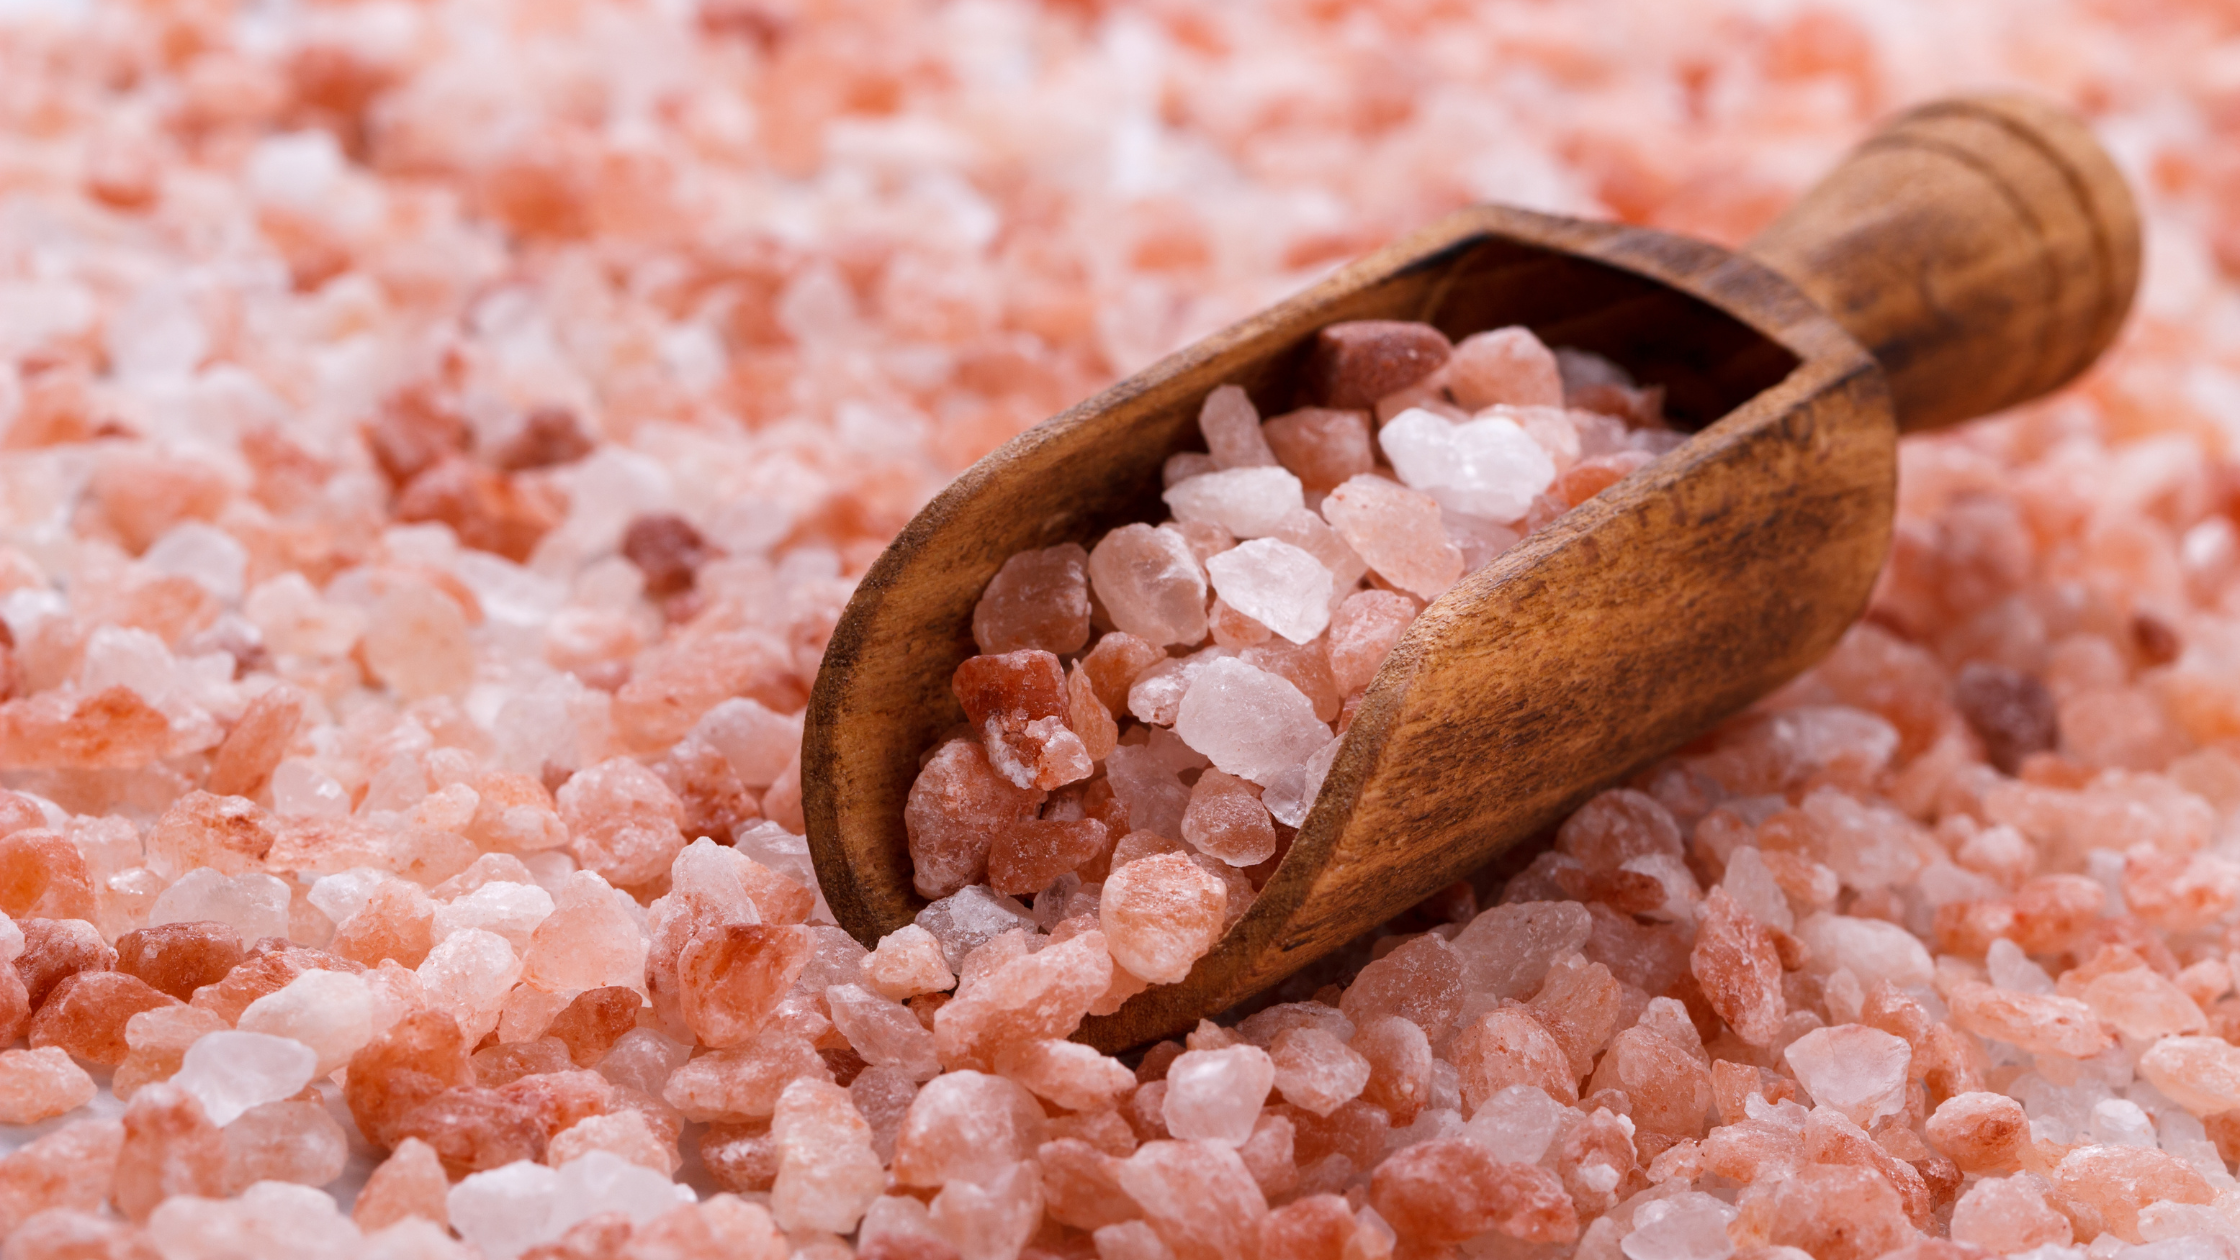 Uses of Pink Himalayan Salt